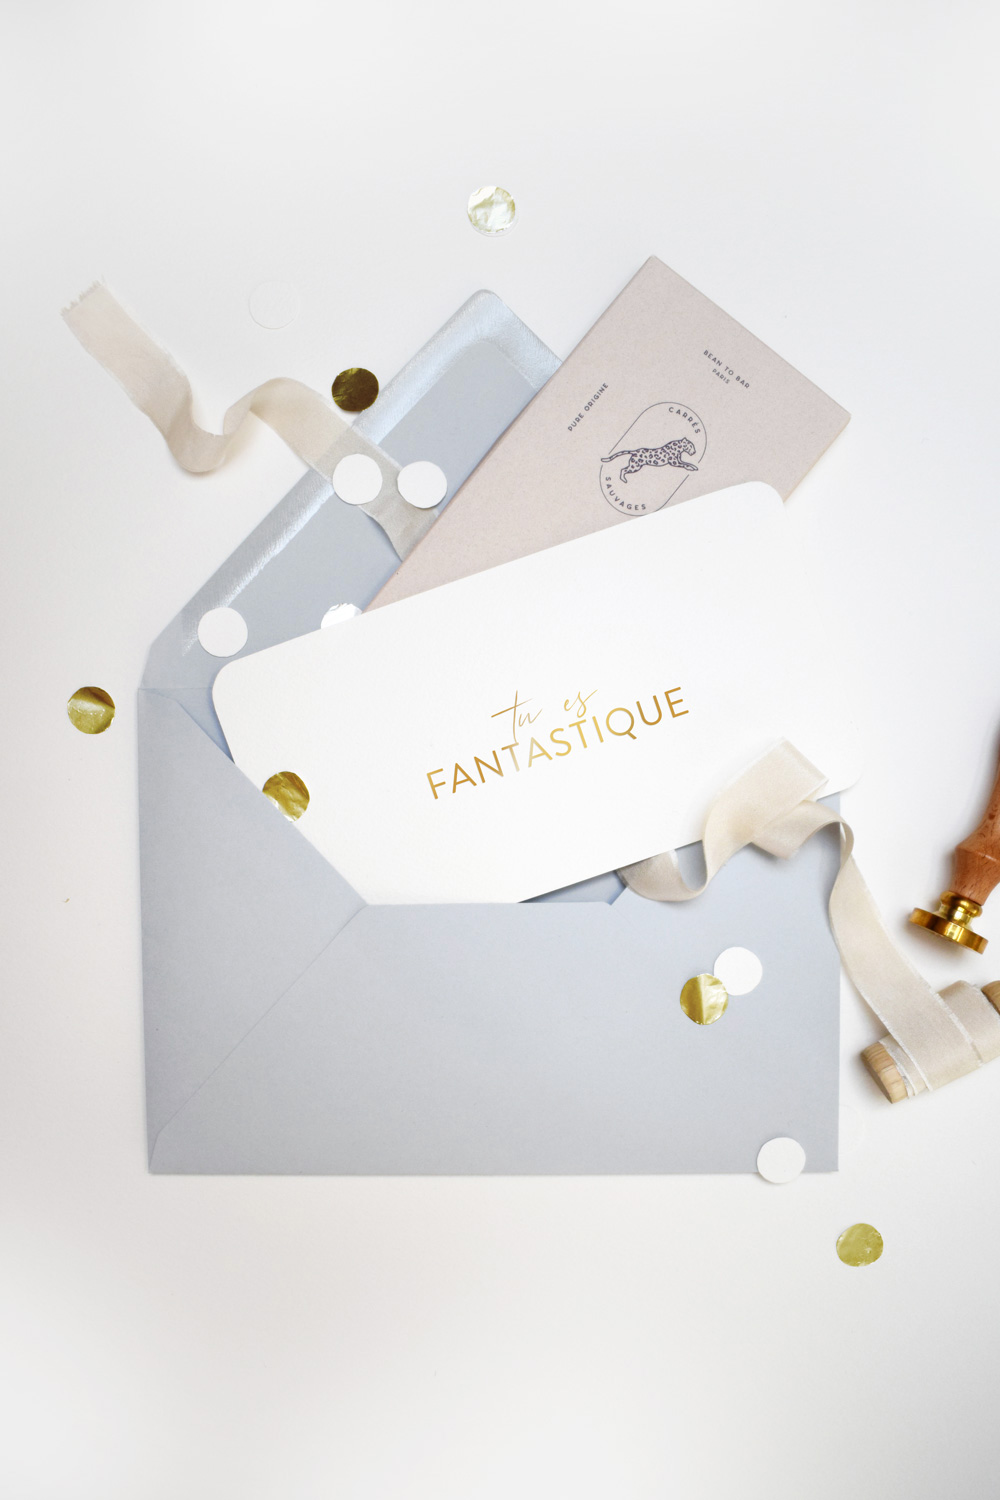 Une carte cadeau festive et élégante avec un joli carton doublé d'une tablette de chocolat dans une enveloppe calligraphiée